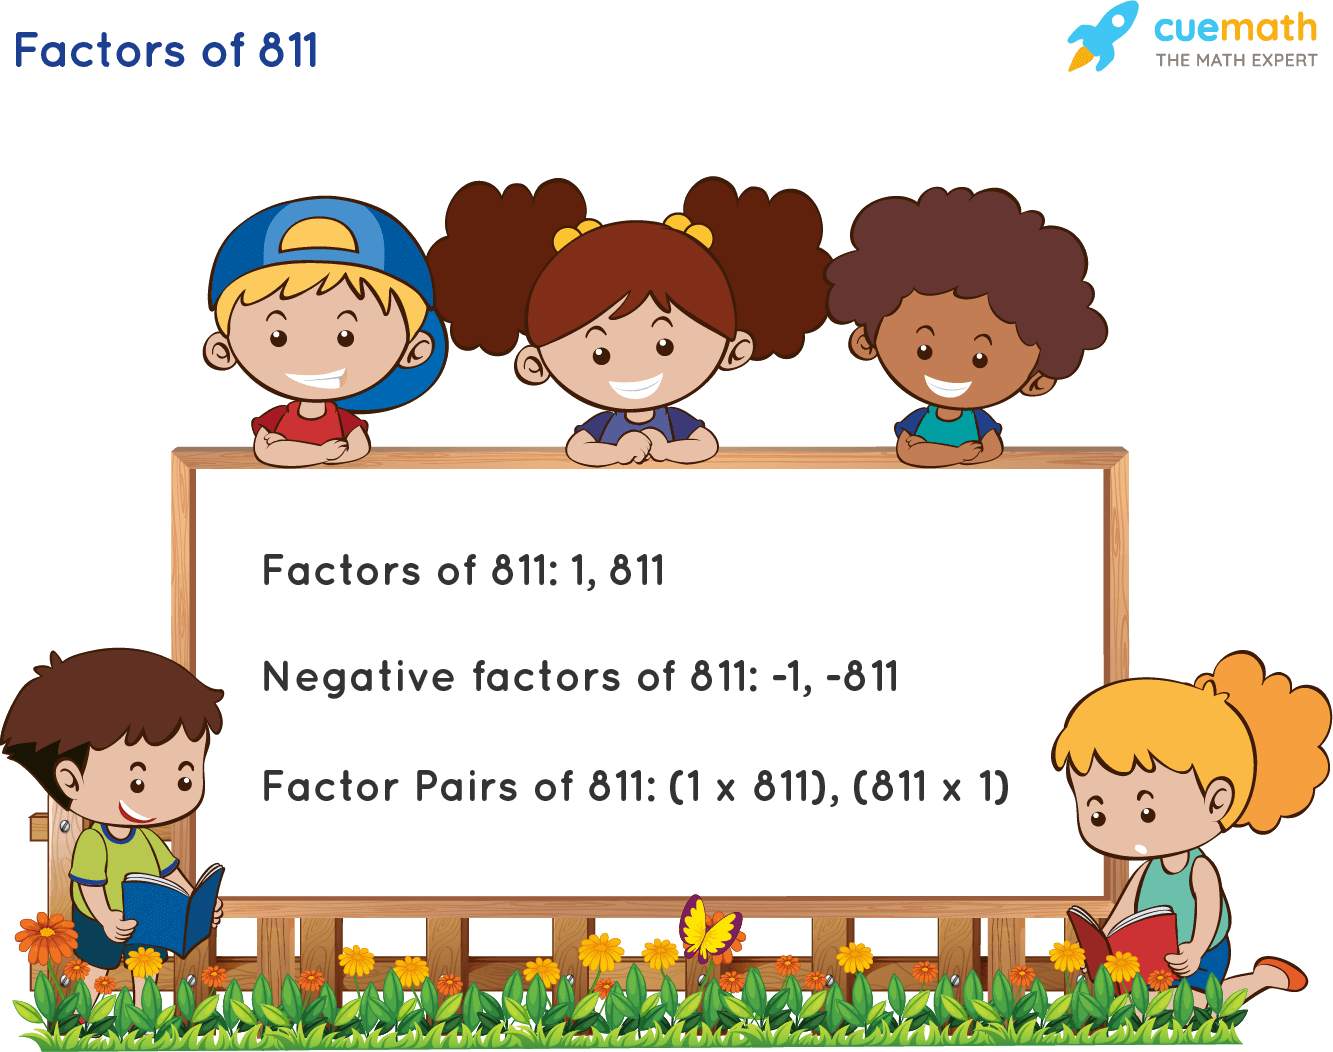 Factors of 811